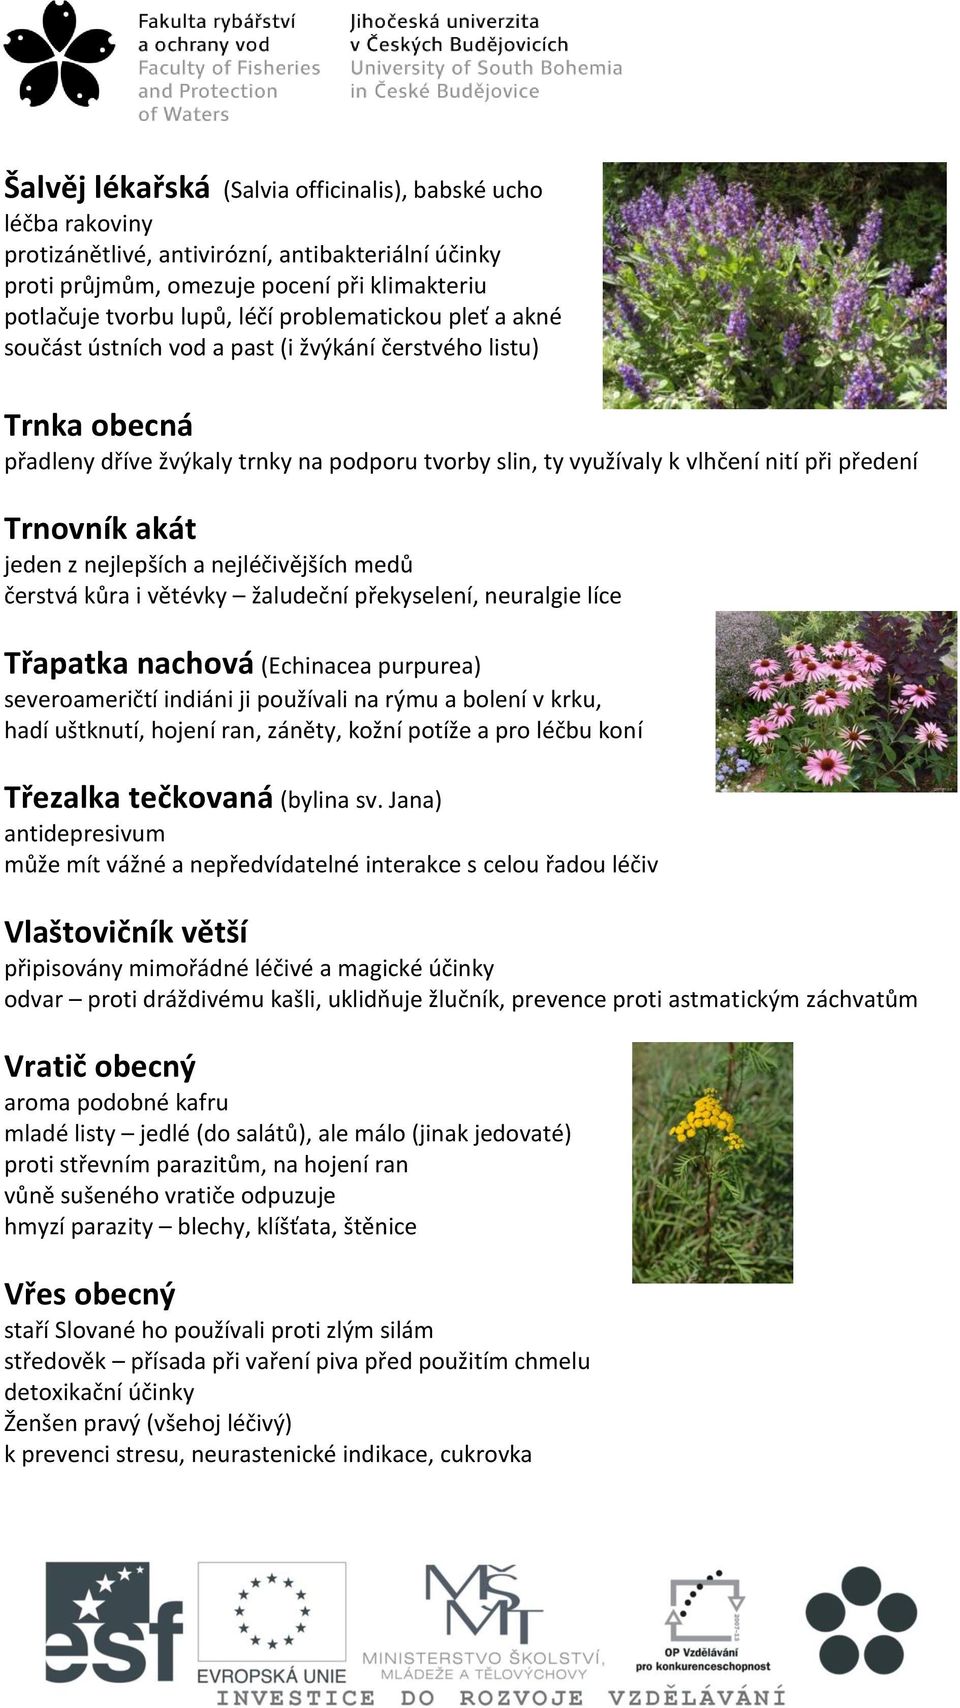 akát jeden z nejlepších a nejléčivějších medů čerstvá kůra i větévky žaludeční překyselení, neuralgie líce Třapatka nachová (Echinacea purpurea) severoameričtí indiáni ji používali na rýmu a bolení v